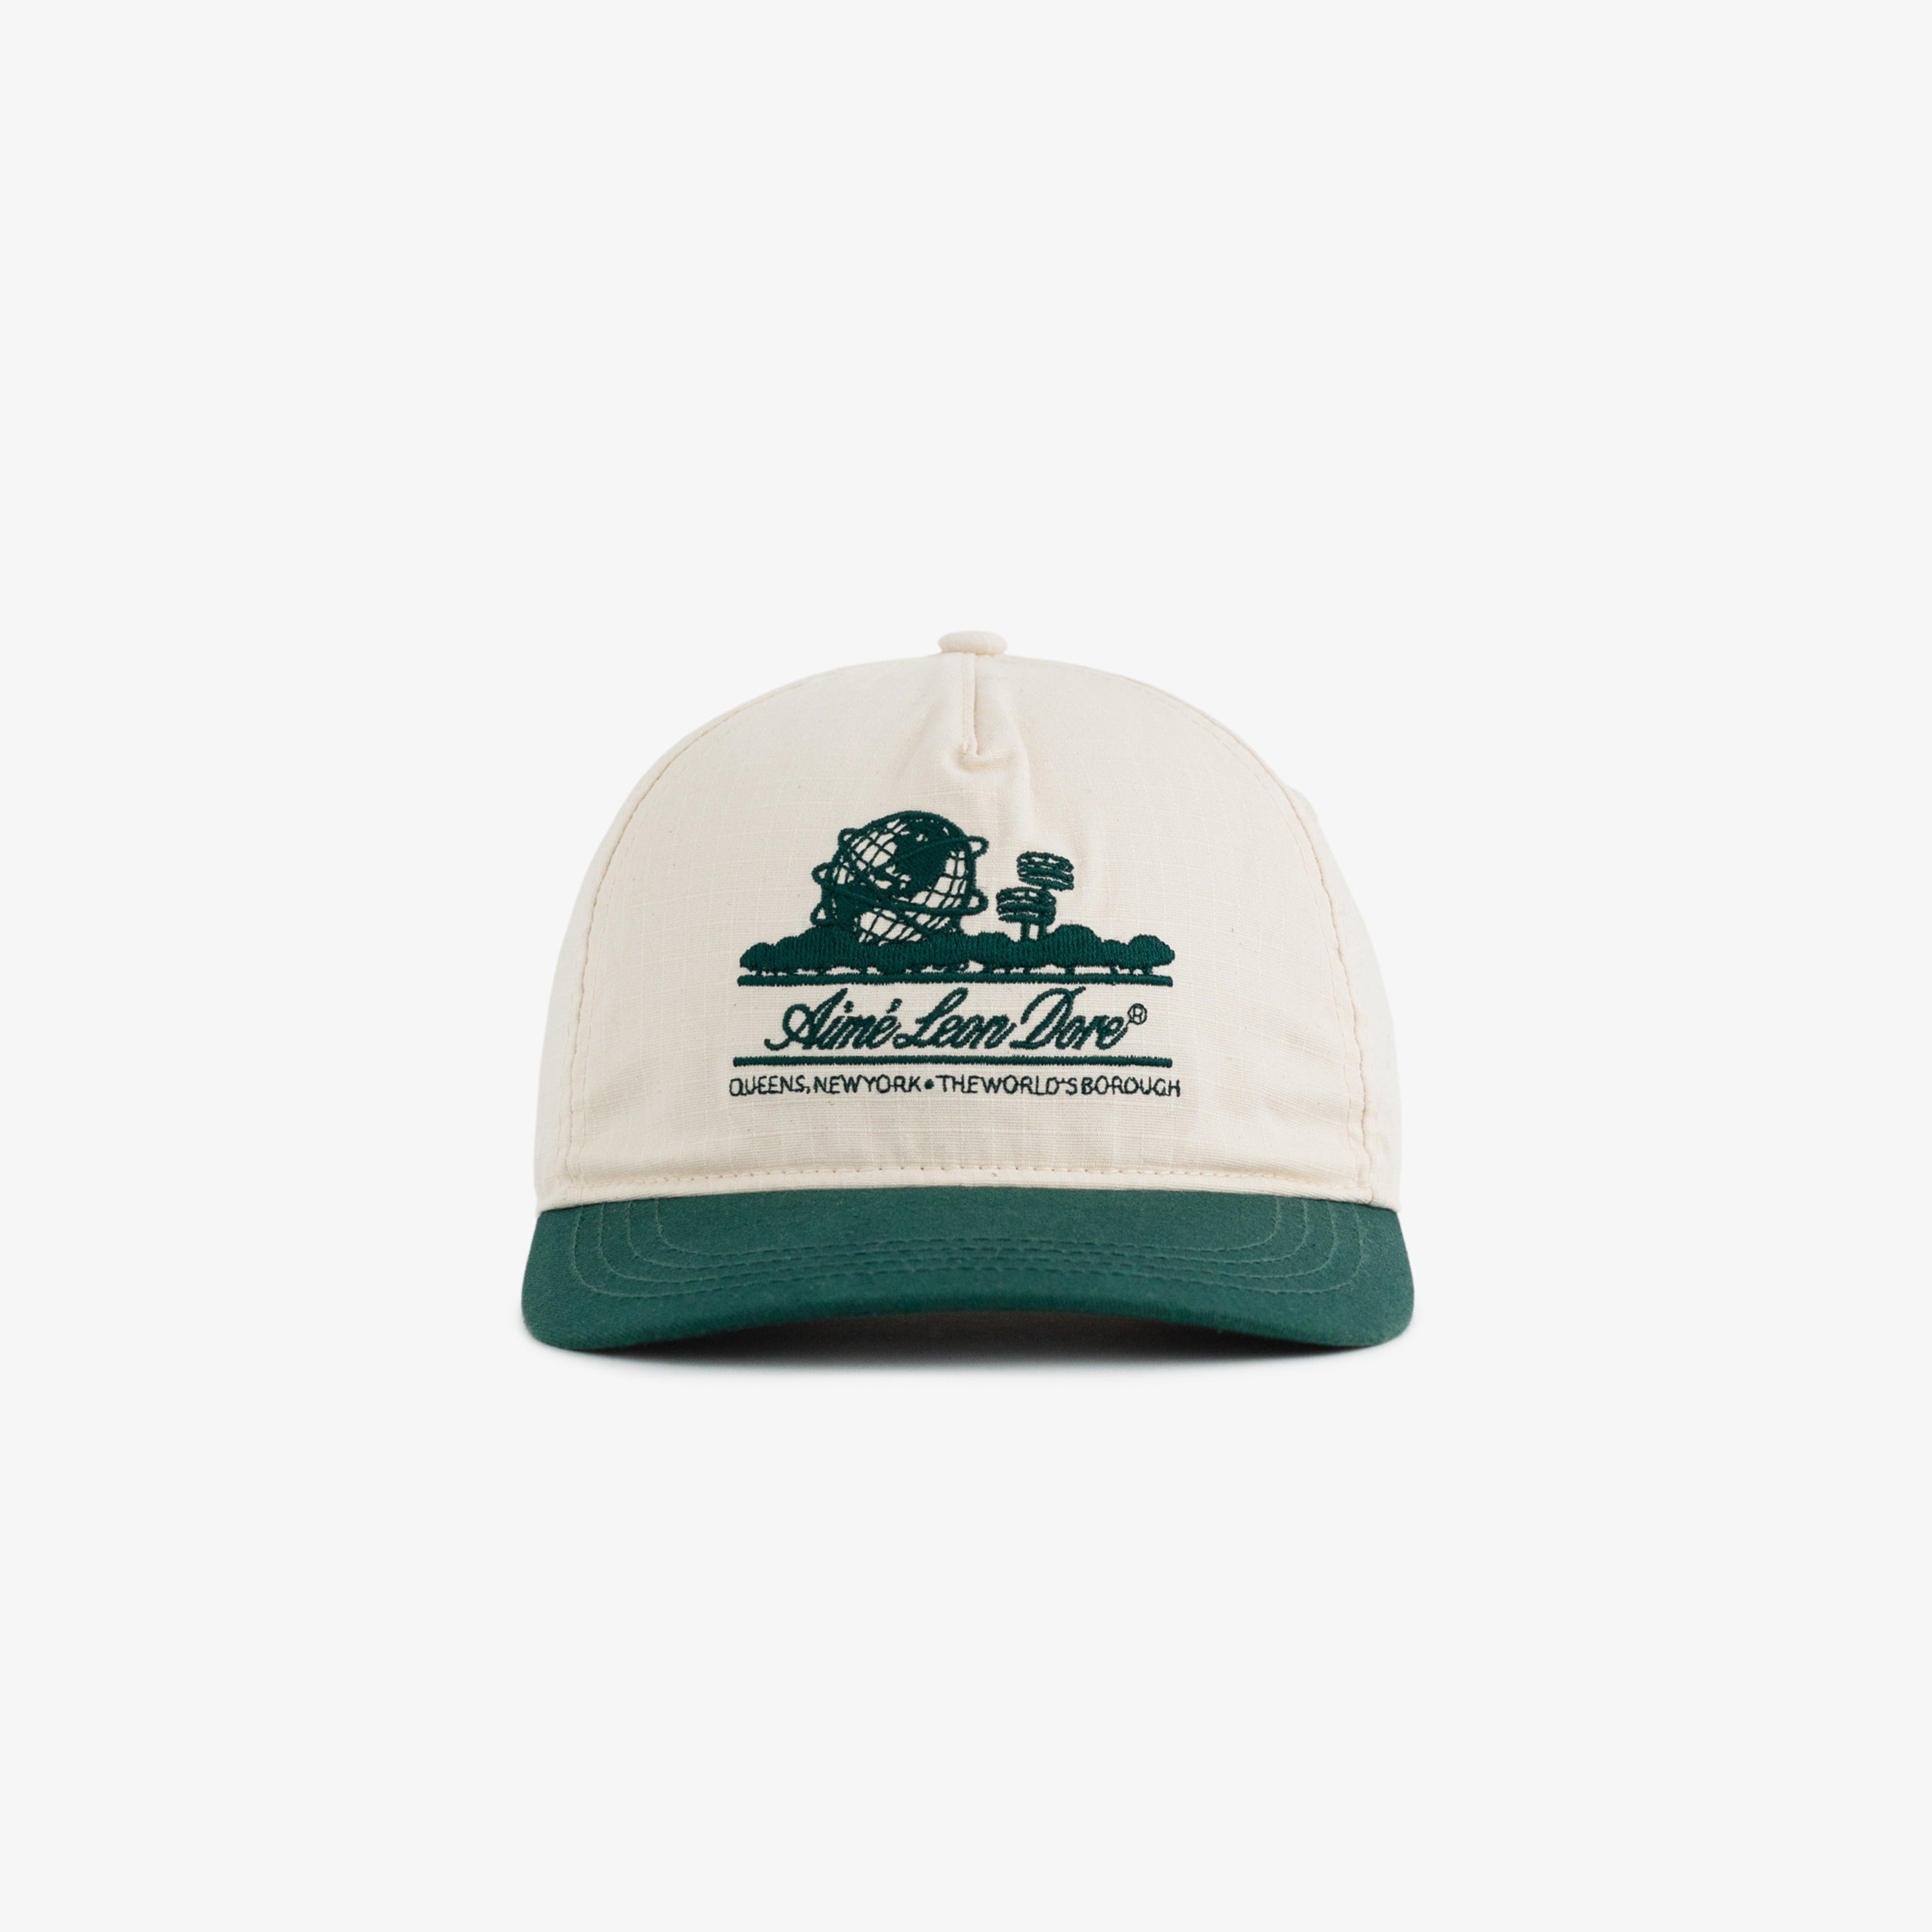 Unisphere Hat